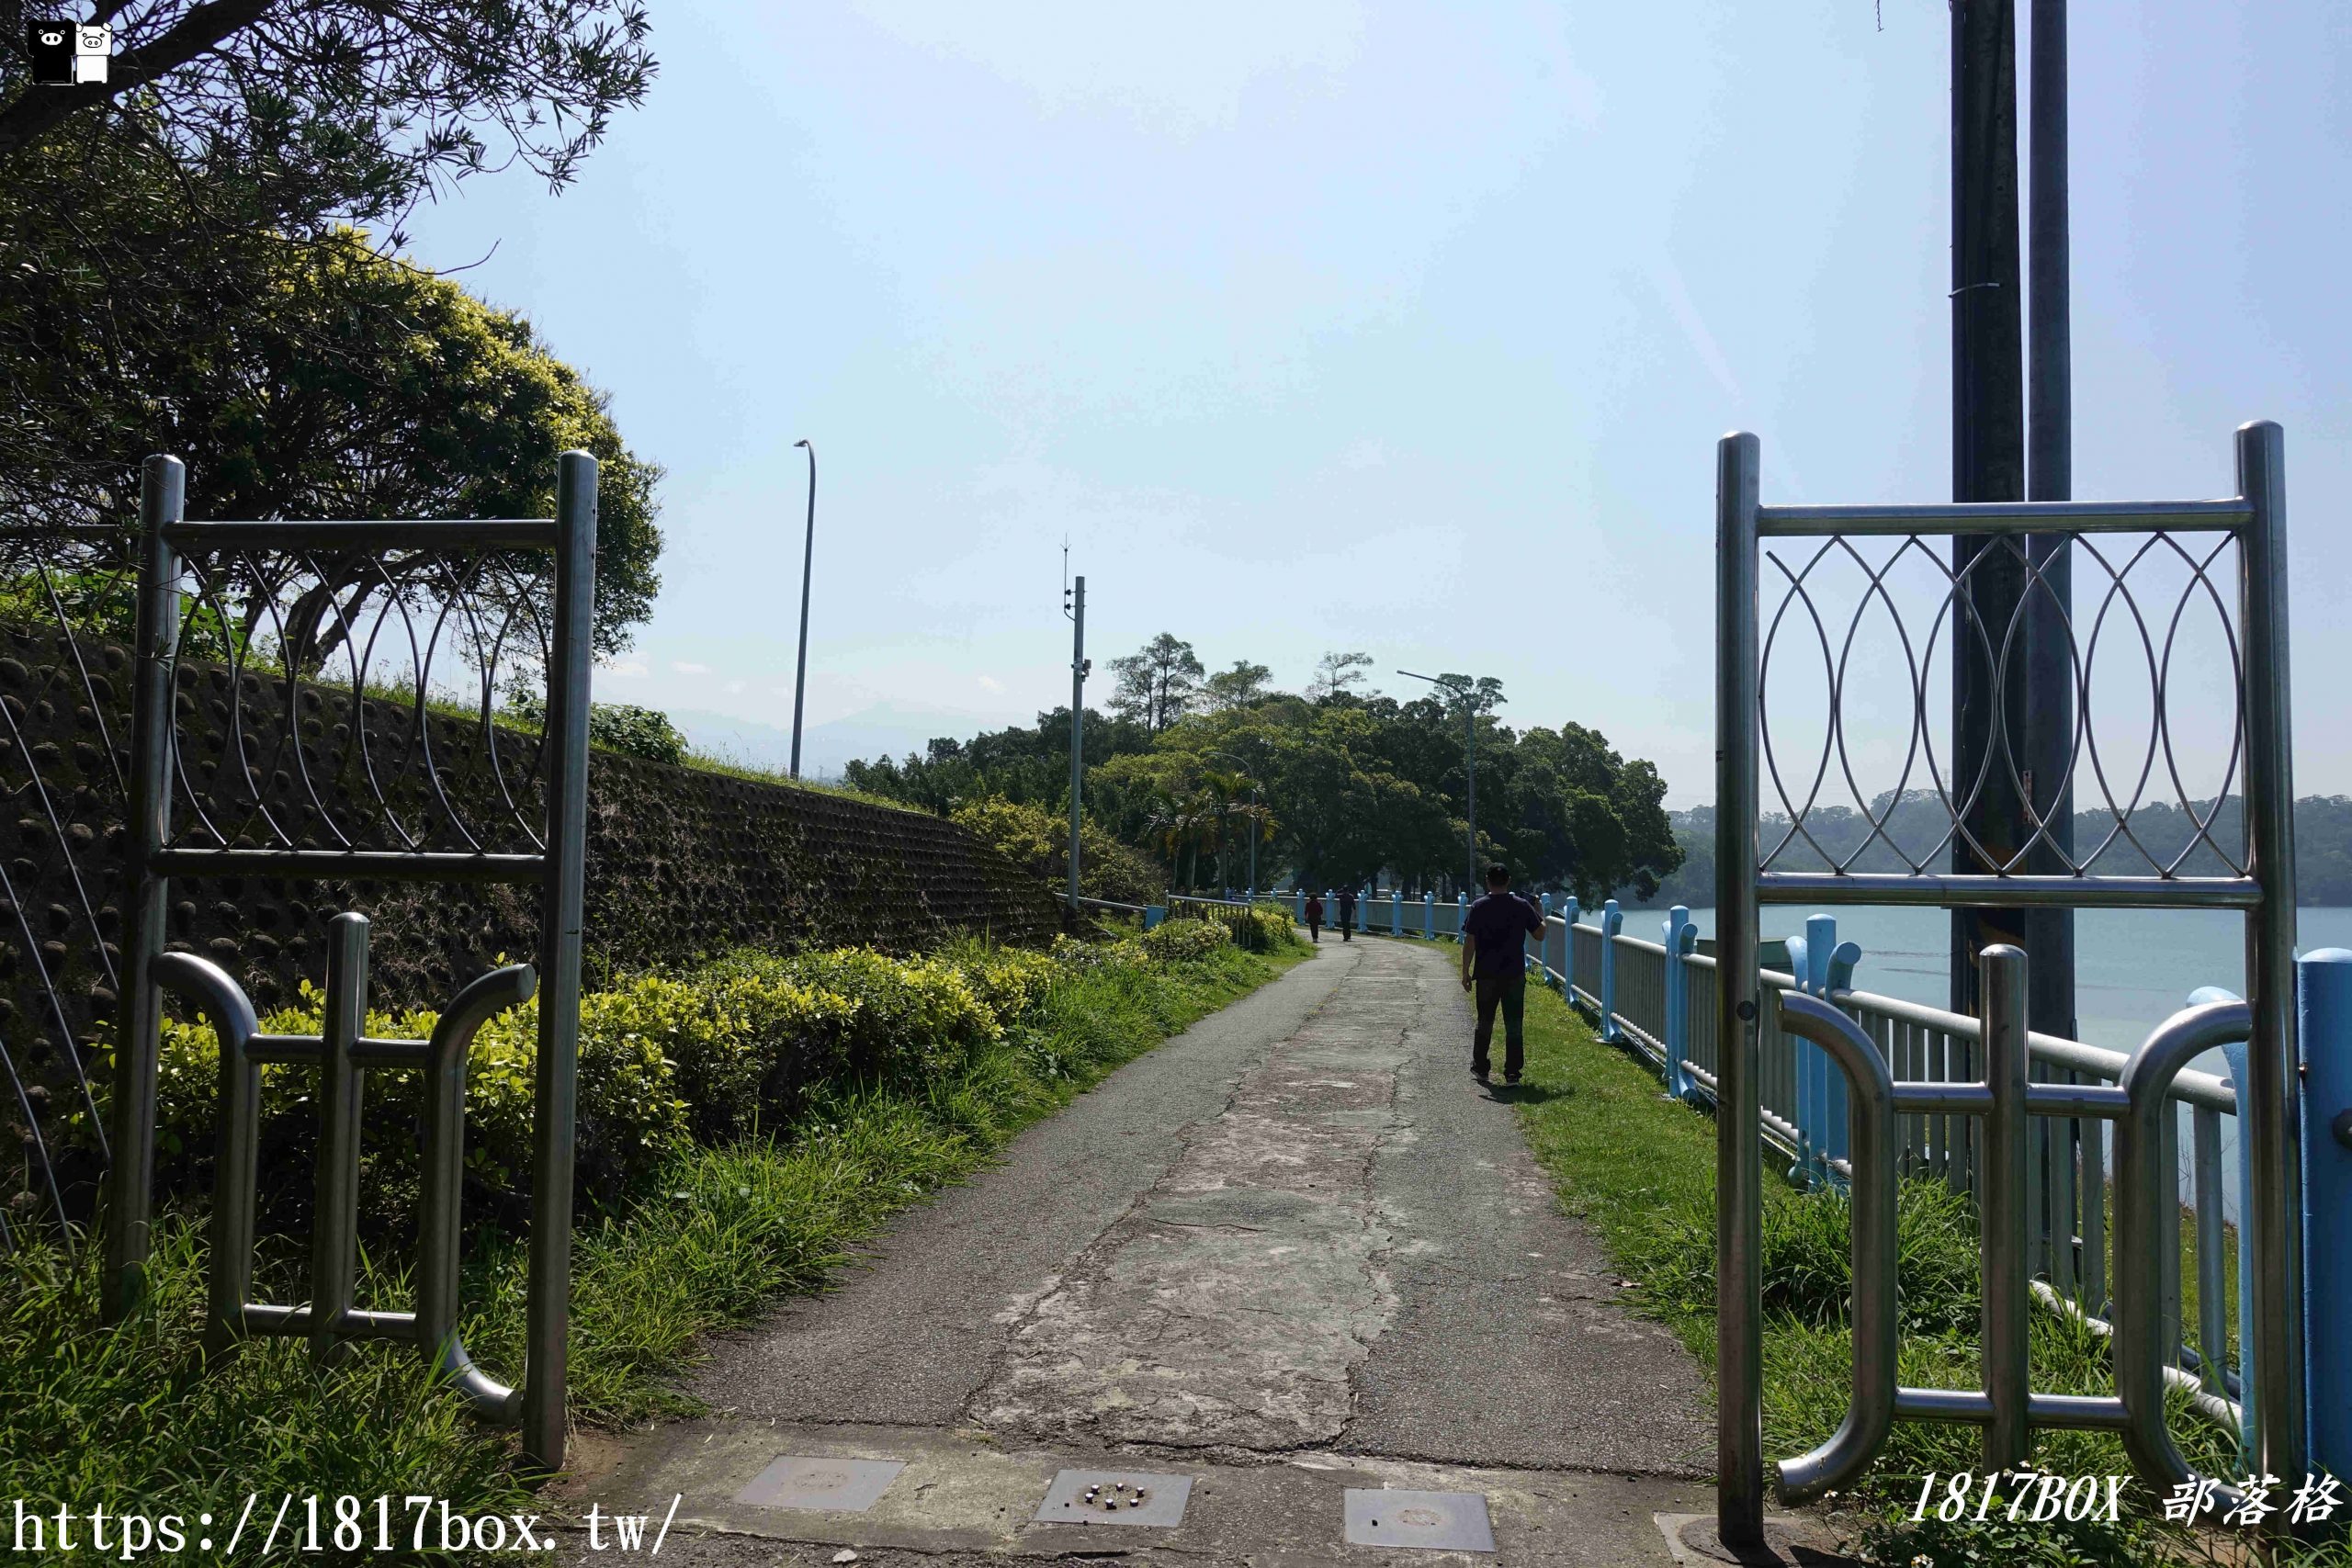 【苗栗。頭份】永和山水庫。台灣第一座沒有水門和水閘的水庫。山水相映氣象萬千